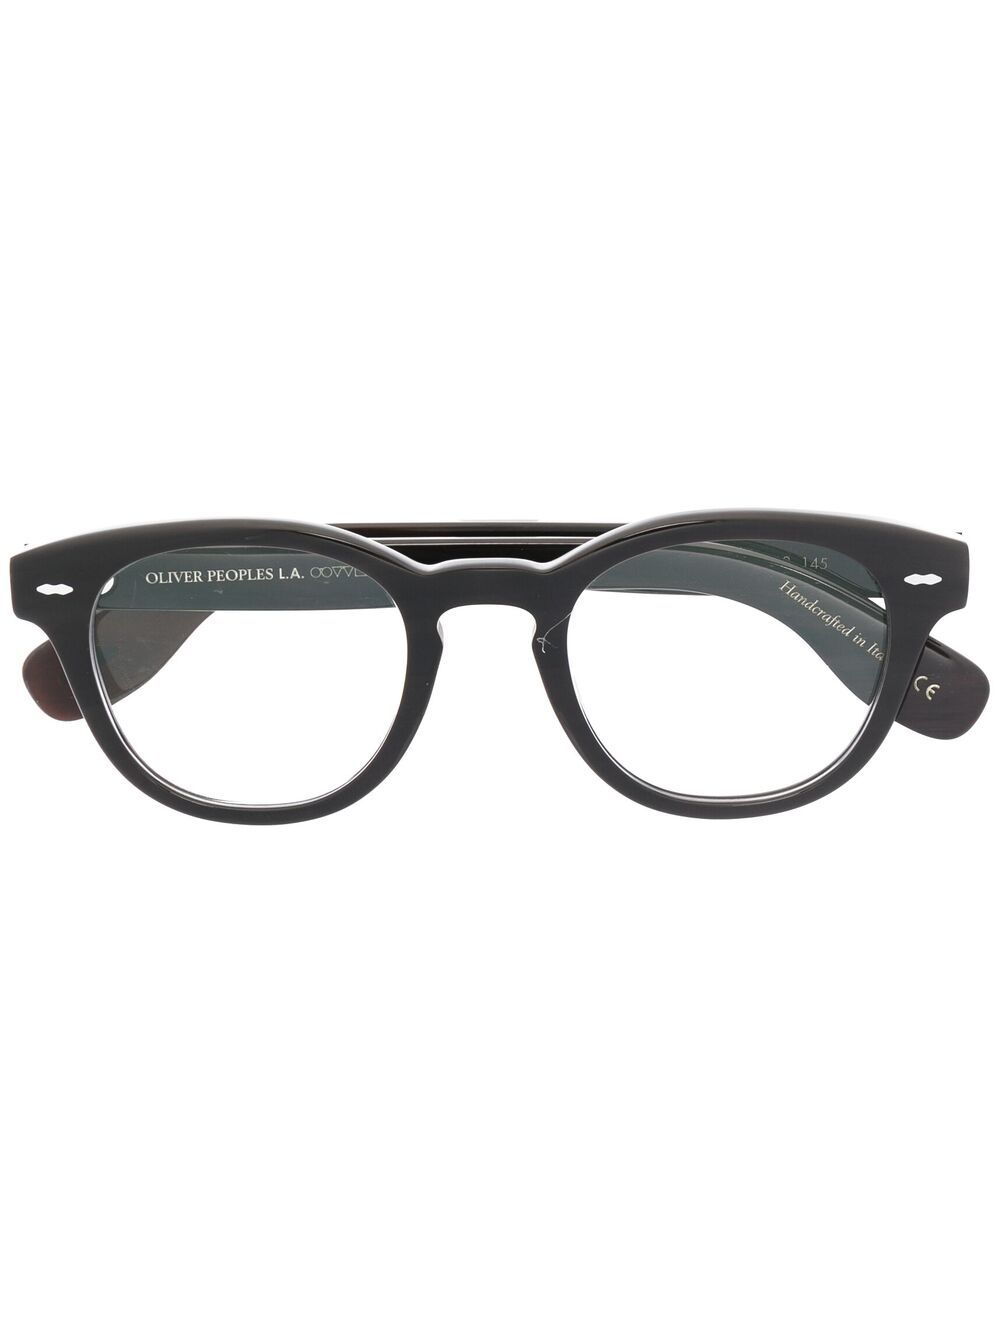 Oliver Peoples round frame glasses